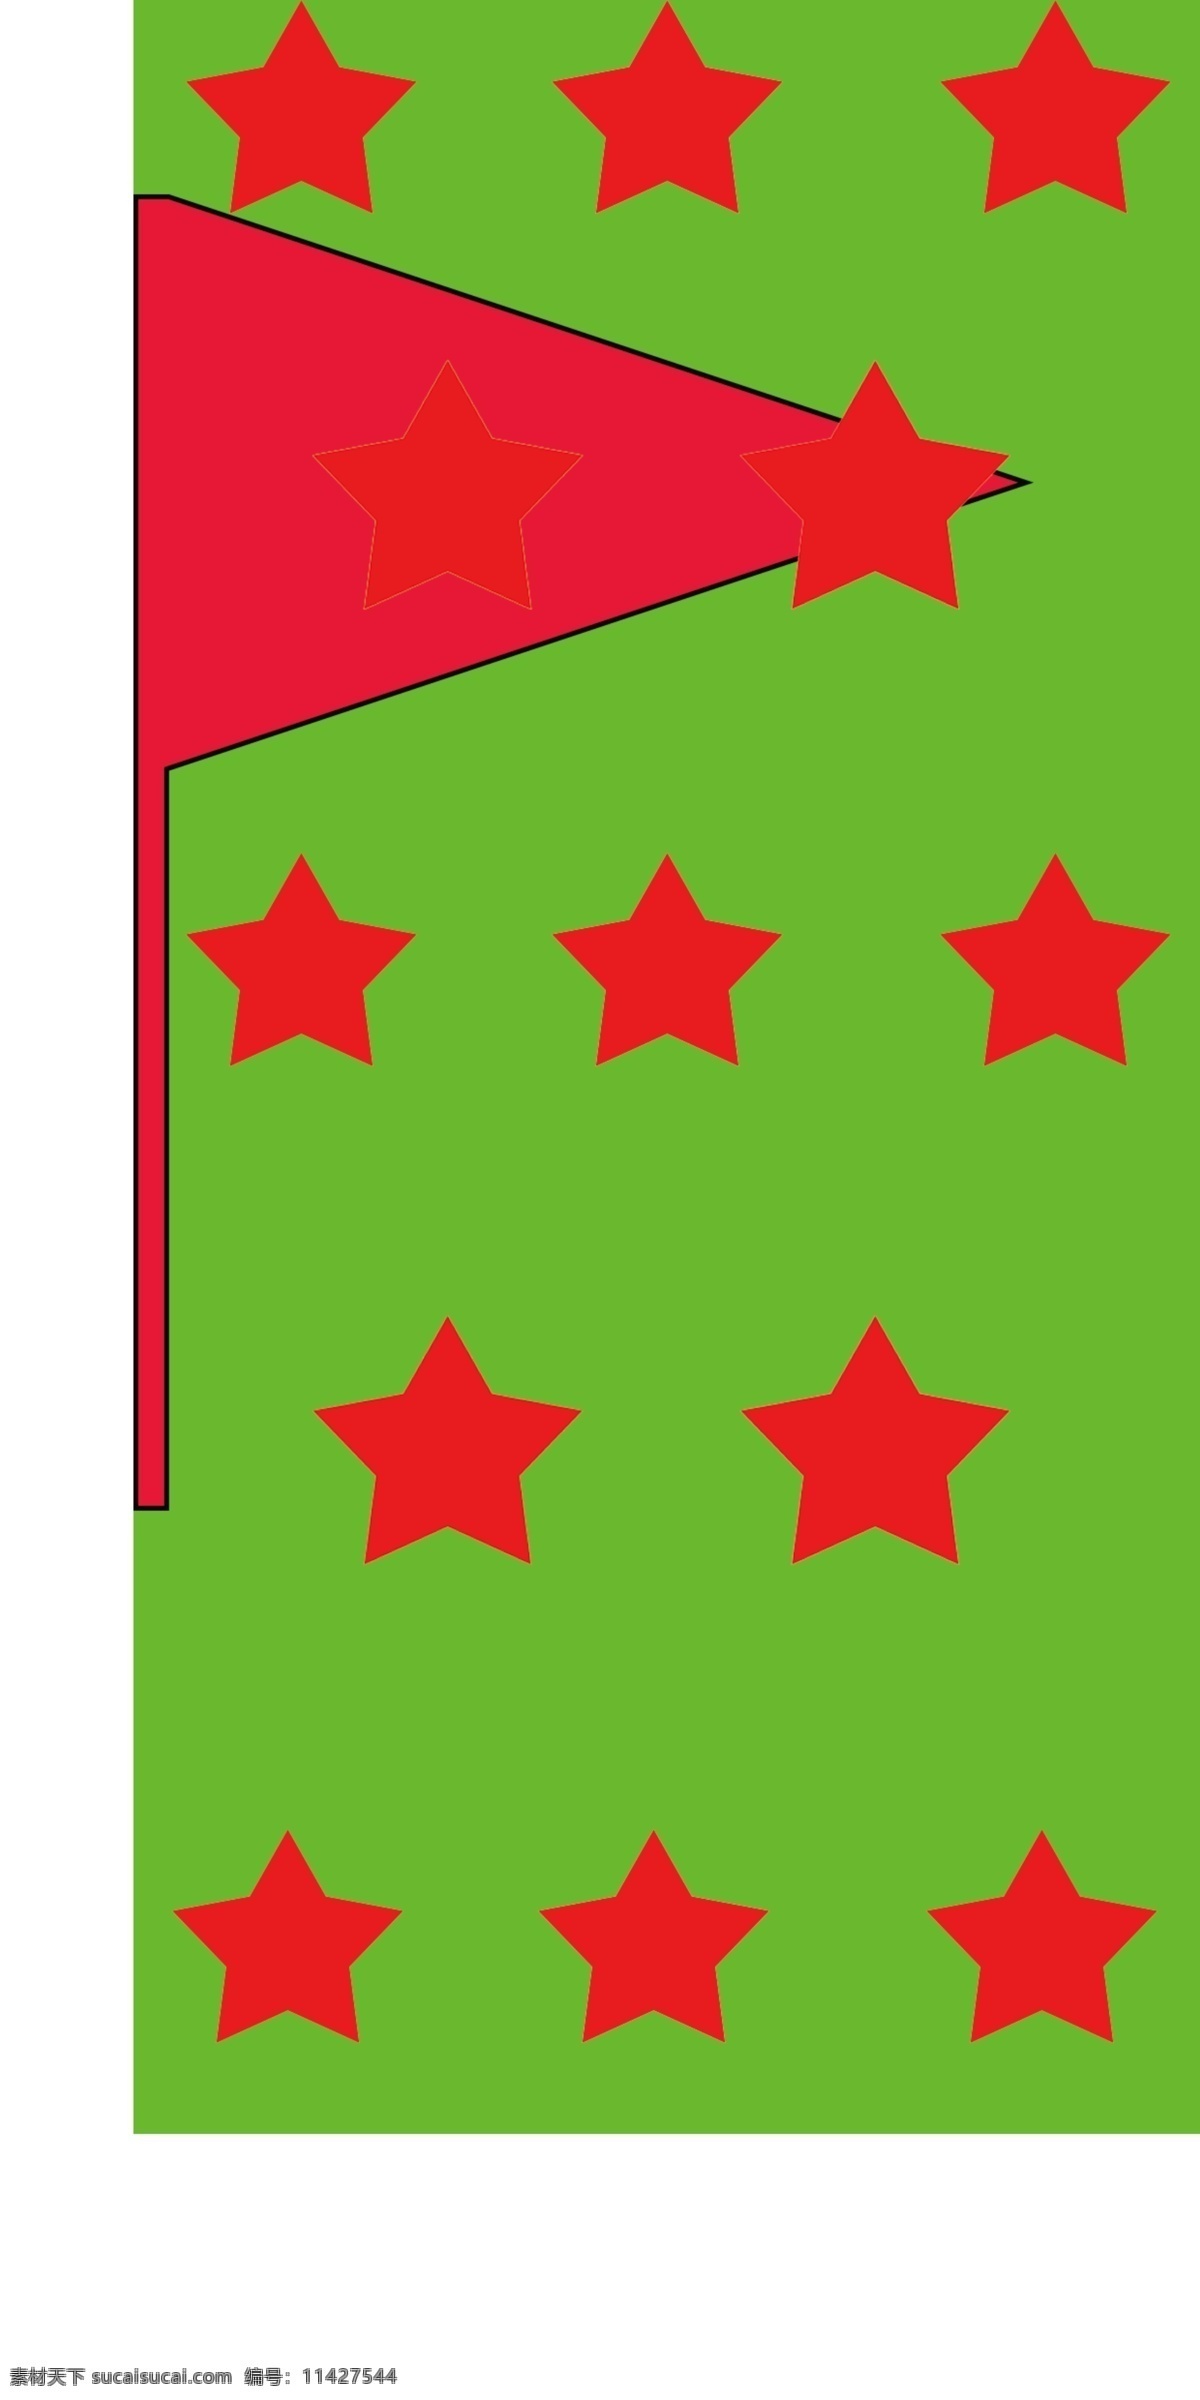 许多五角星 五角星 红五角星 比赛棋 小星星 标志图标 公共标识标志